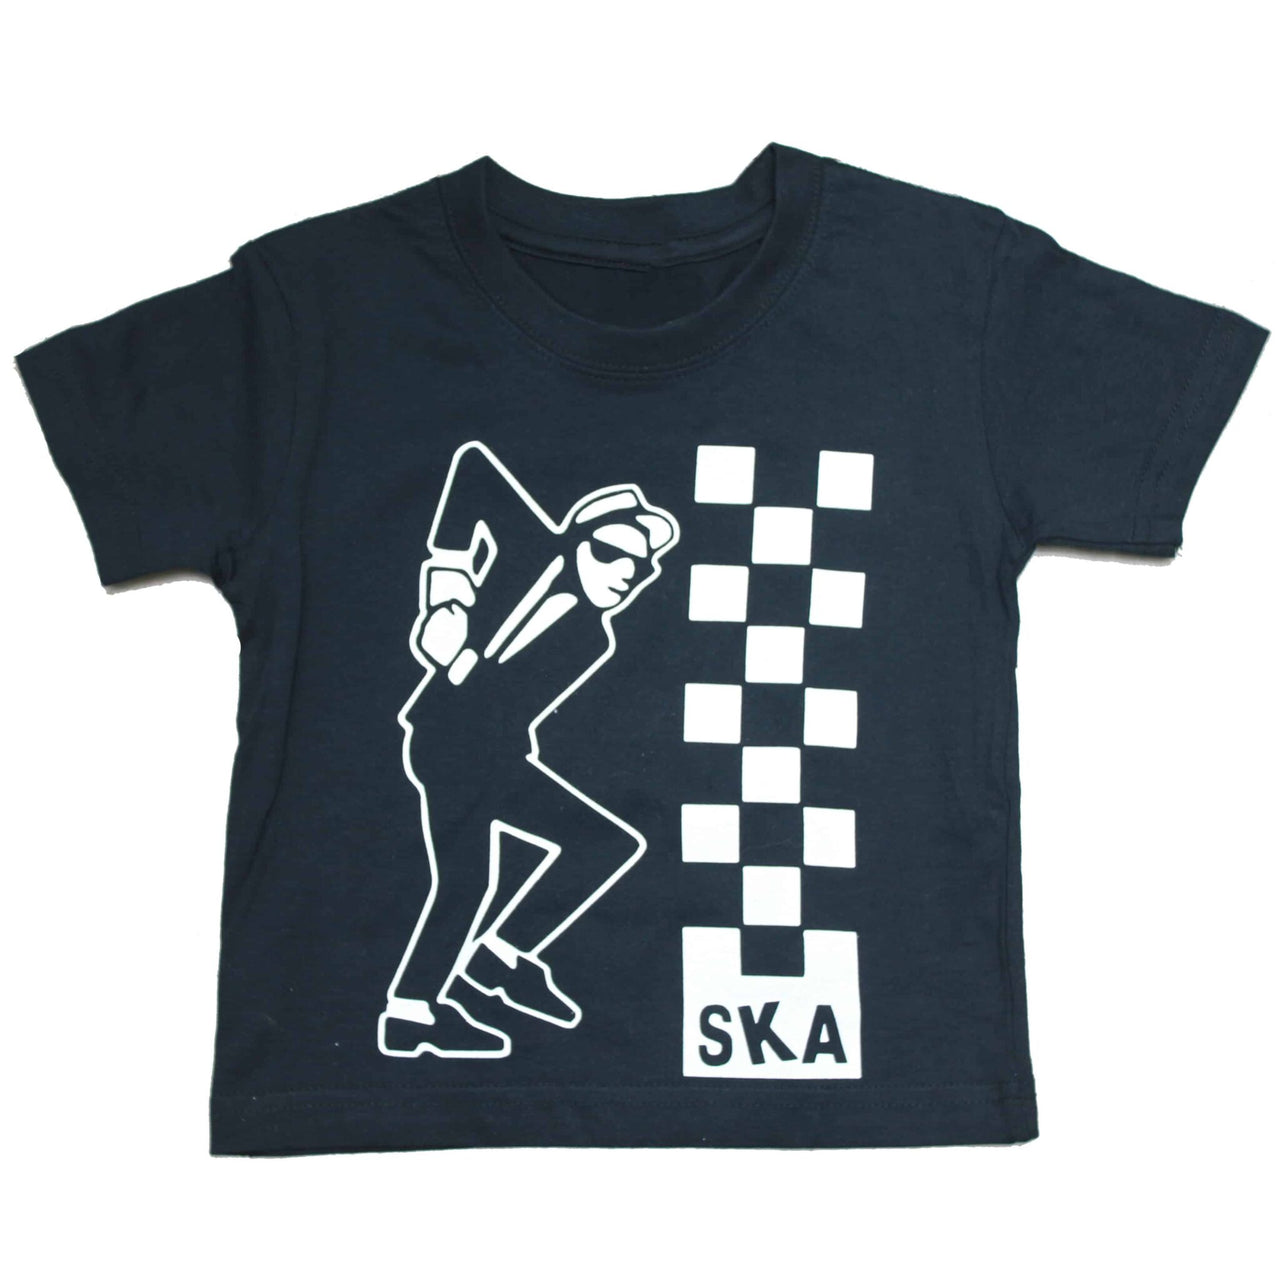 Ska Kids Black T-Shirt